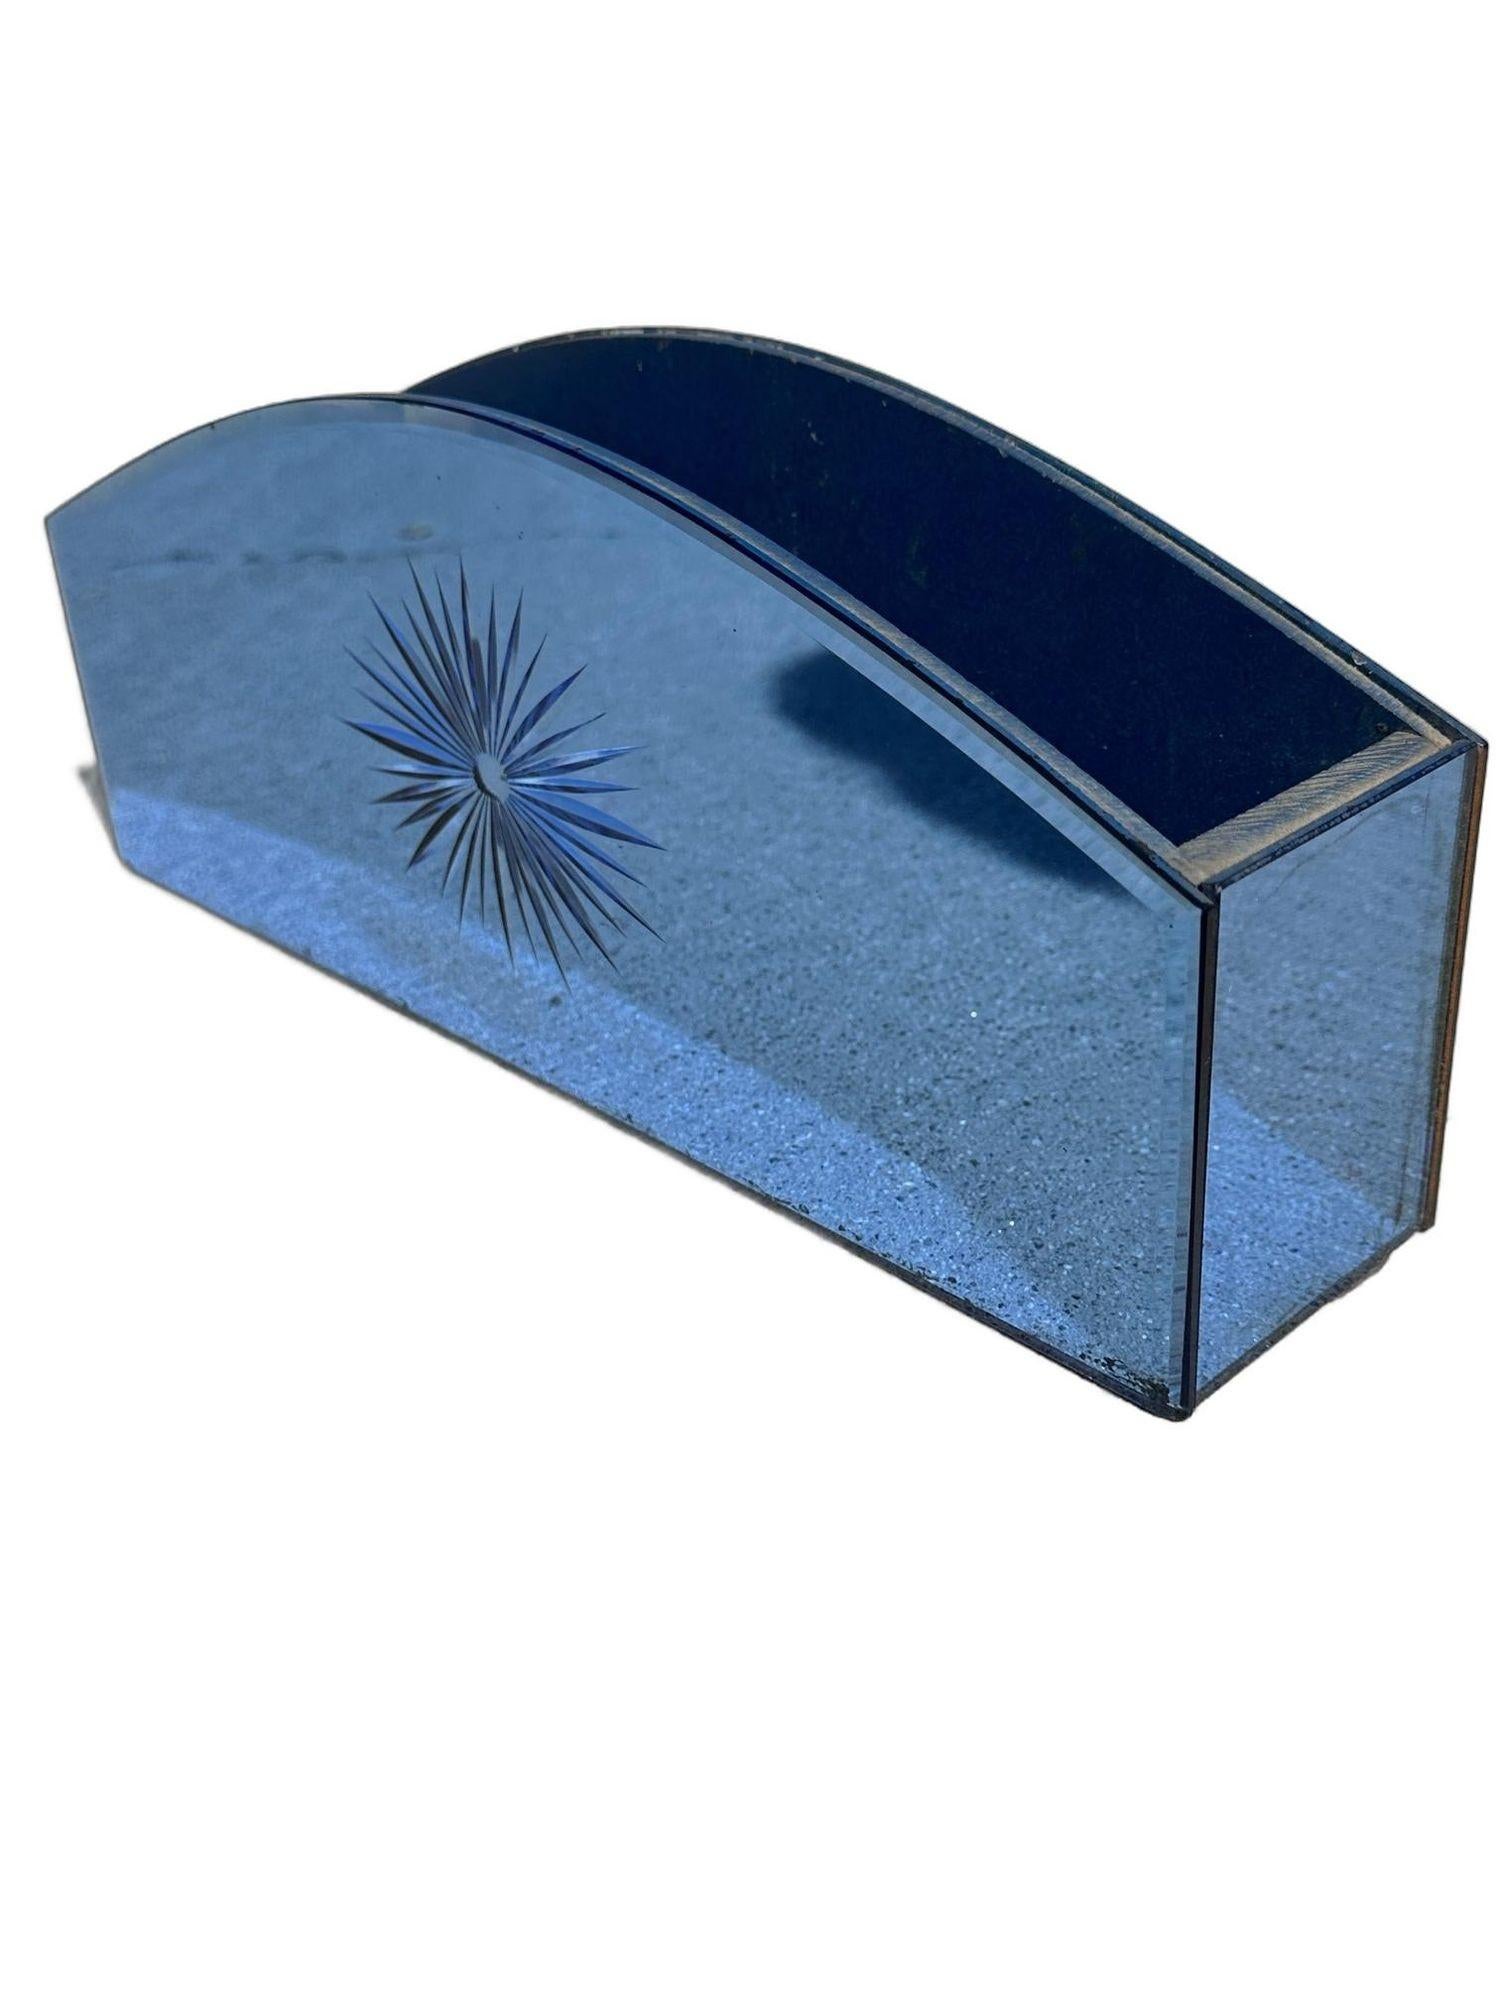 Vintage Cobalt Blue Glass Crystal Mail Organizer with Etched SunBurst For Sale 1